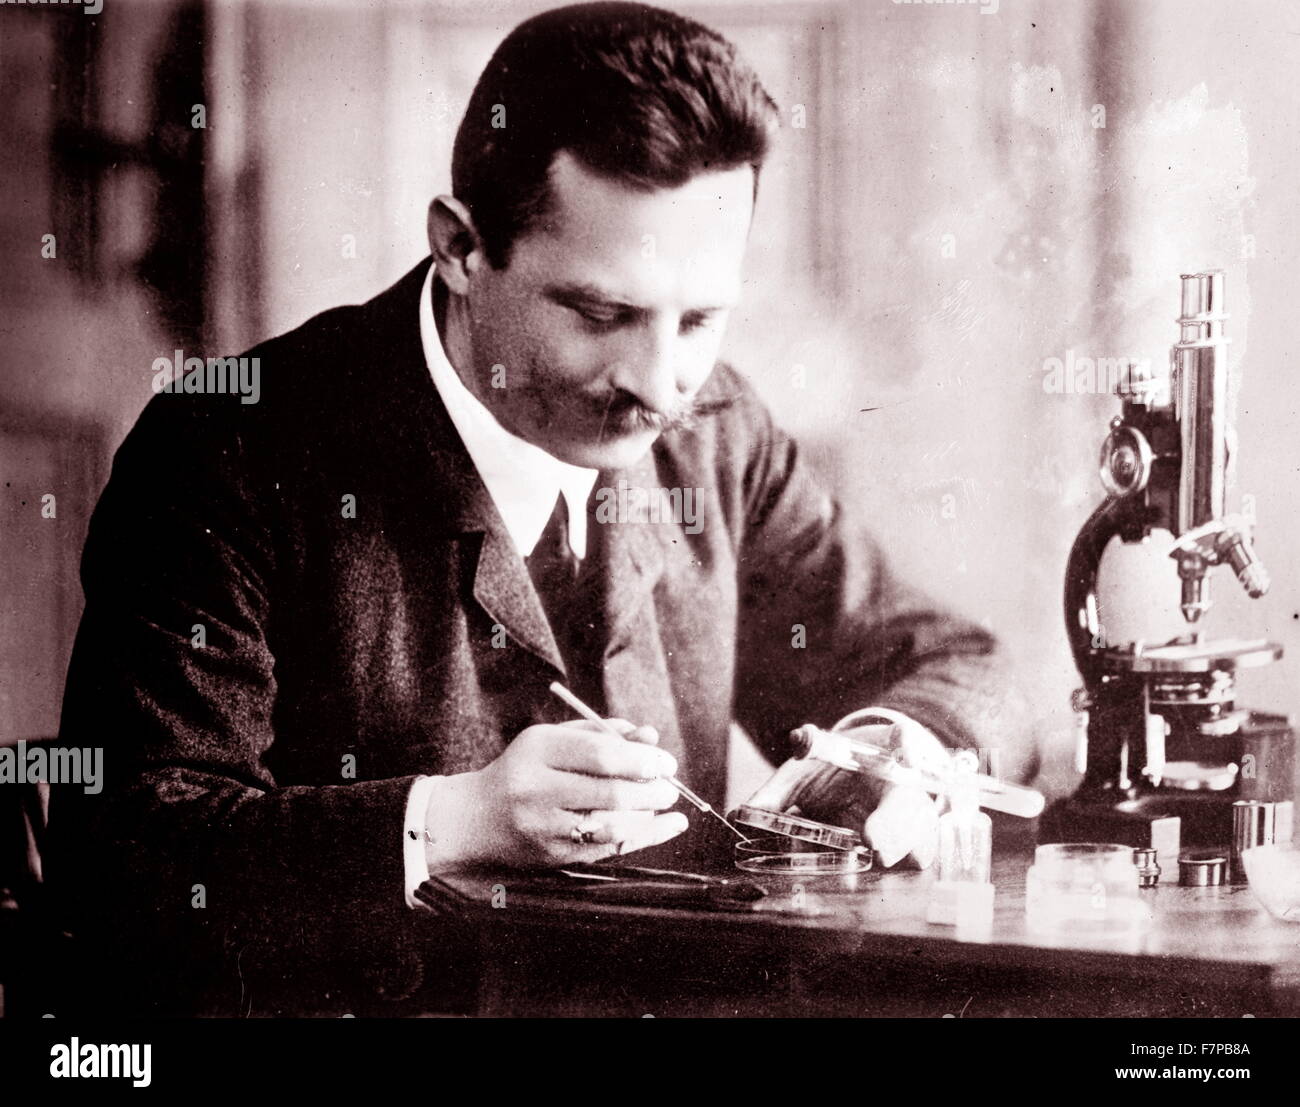 Oswald Richter (1878 – 1955) war ein österreichischer Botaniker im Sinne von Gregor Mendel. Seine botanische Autor Abkürzung (er beschrieb die neue Algen) ist 'O. Richt'. Oswald Richter wurde als Sohn des Direktors des Gymnasiums Prag geboren. Stockfoto